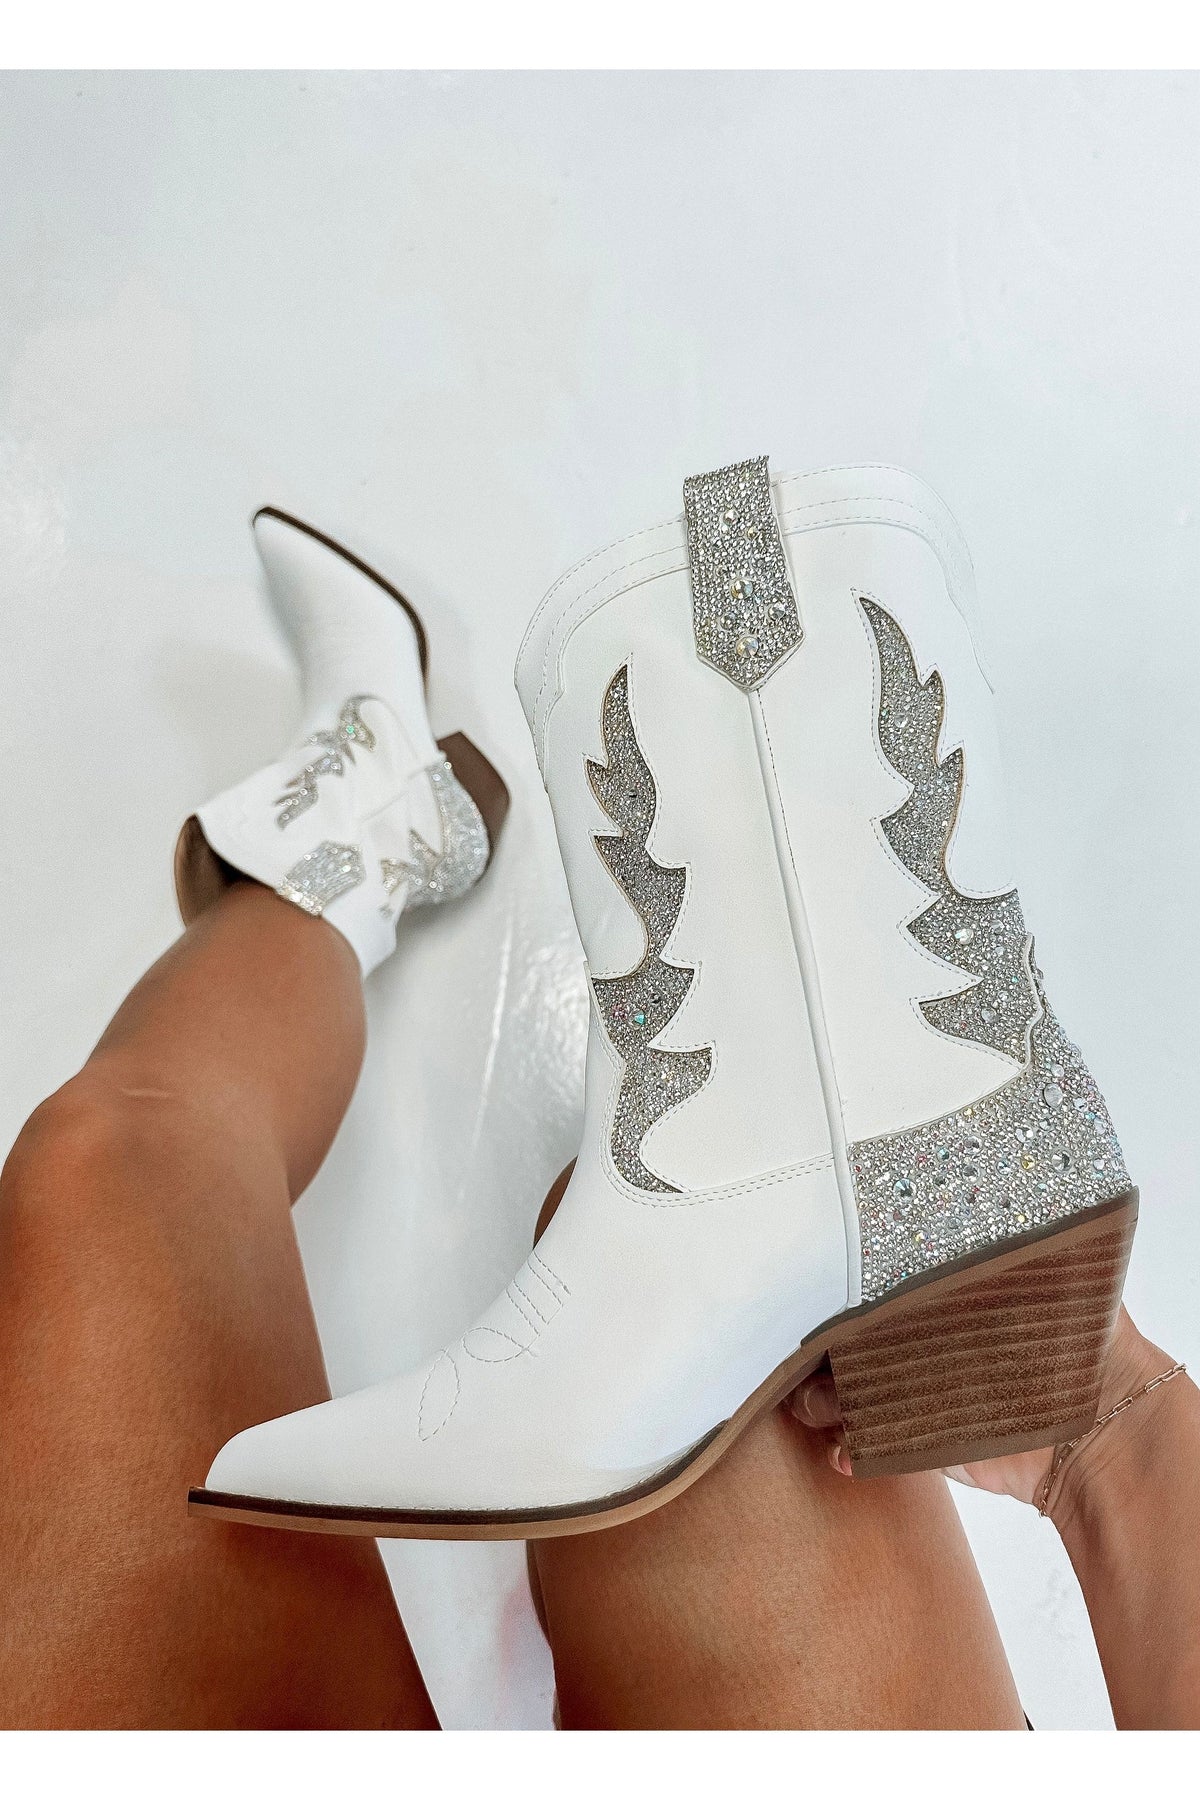 Dolly Rhinestone Midi White Boots-Apparel & Accessories-KCoutureBoutique, women's boutique in Bossier City, Louisiana